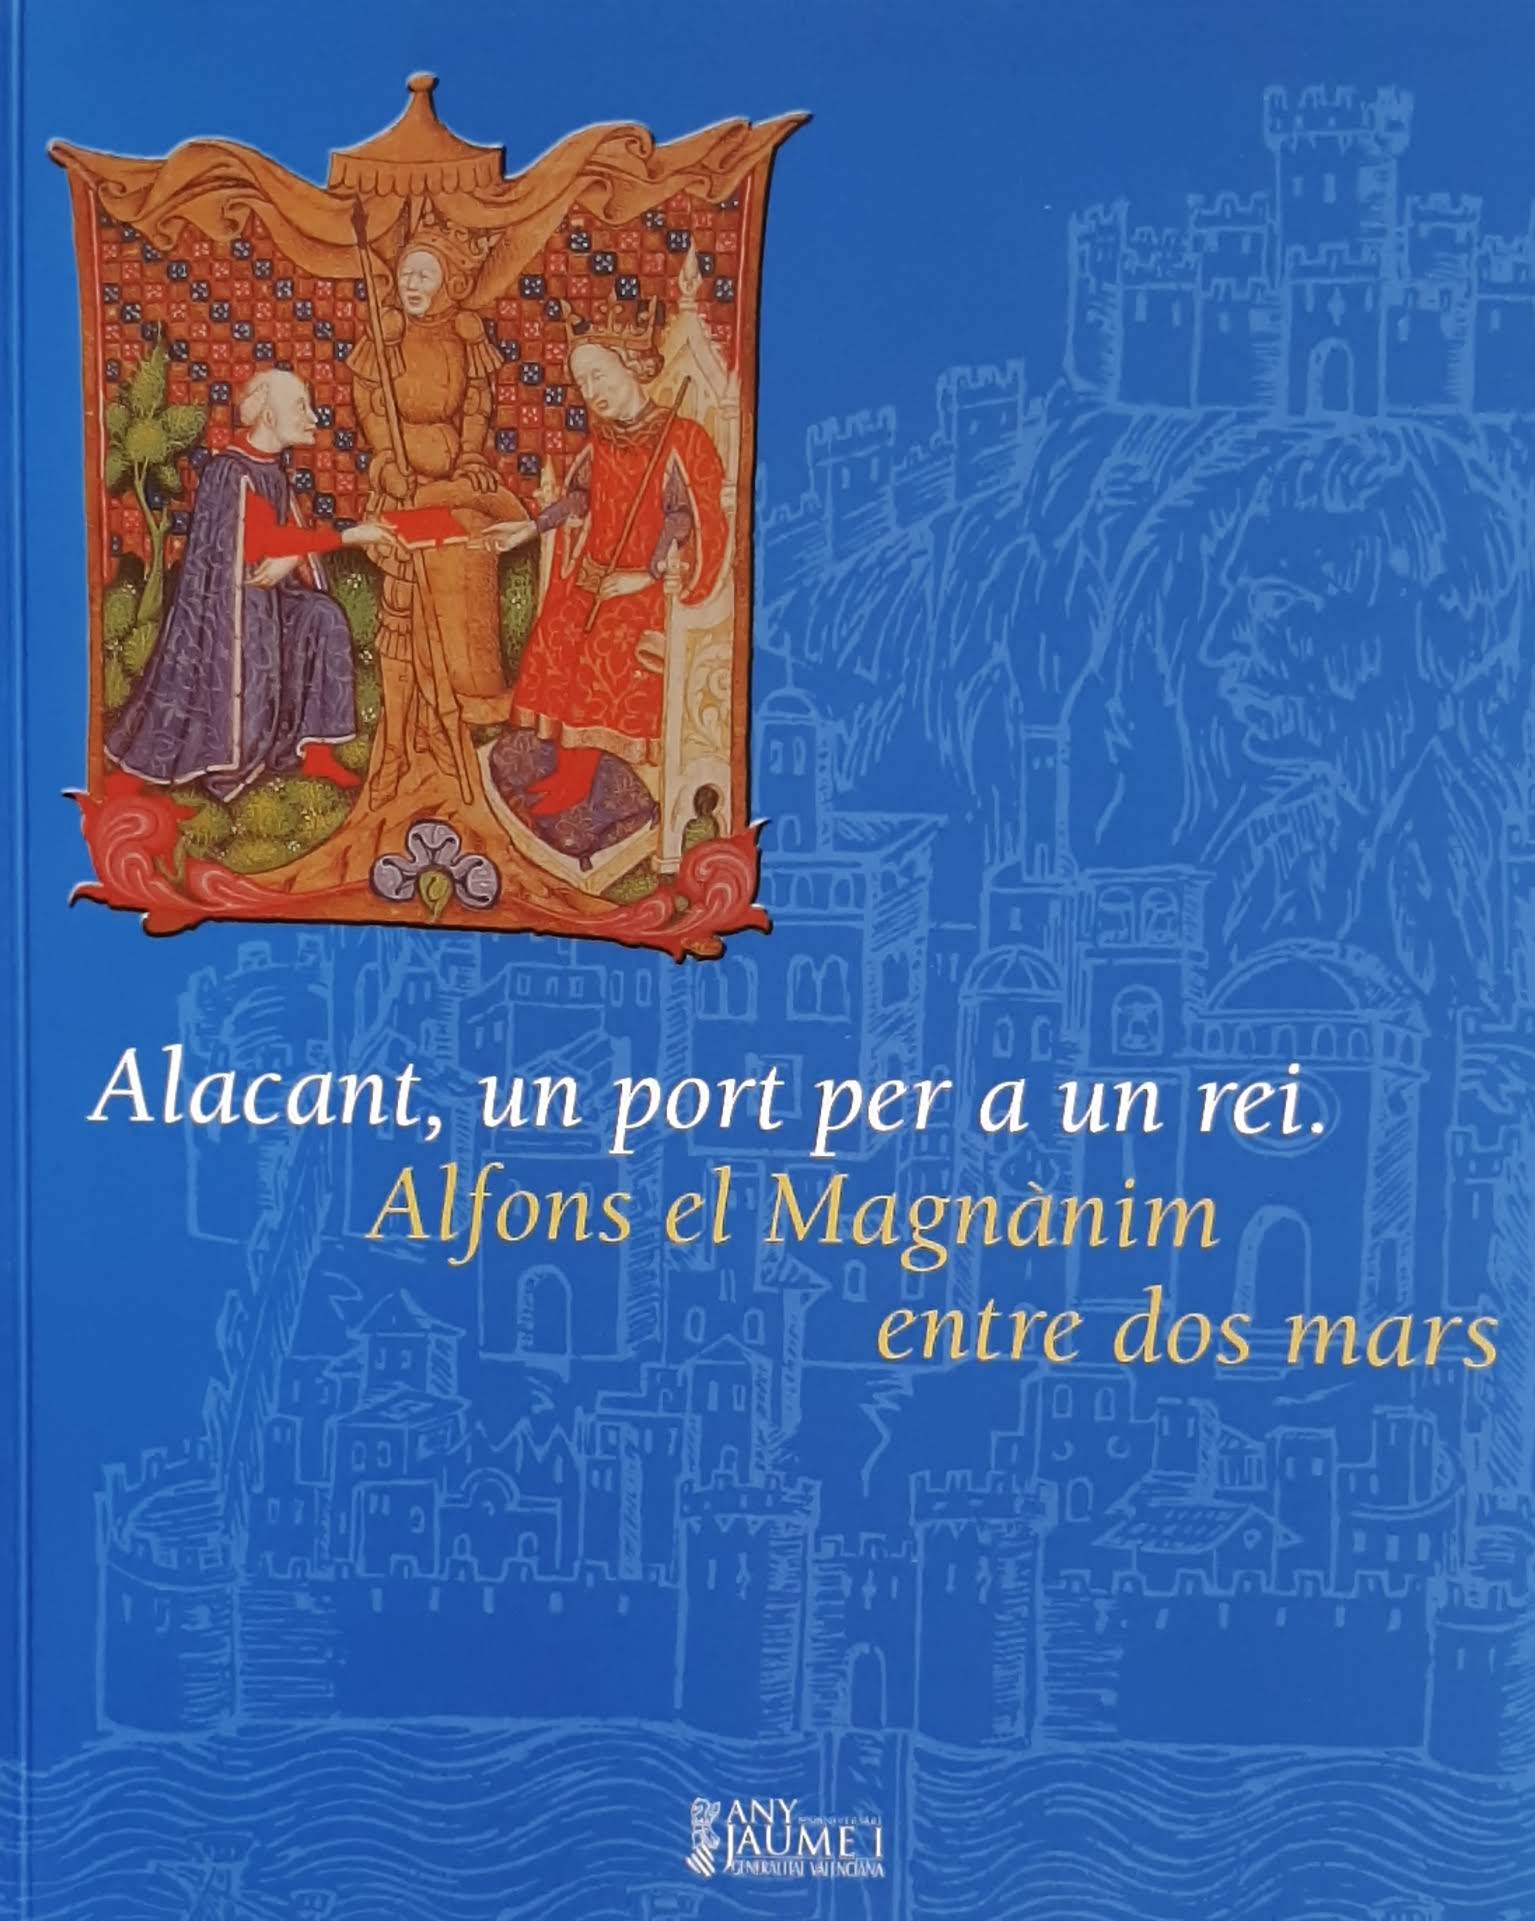 Alacant, un port per a un rei: Alfons el Magnànim entre dos mars. Col·lecció Any Jaume I: 800 aniversari